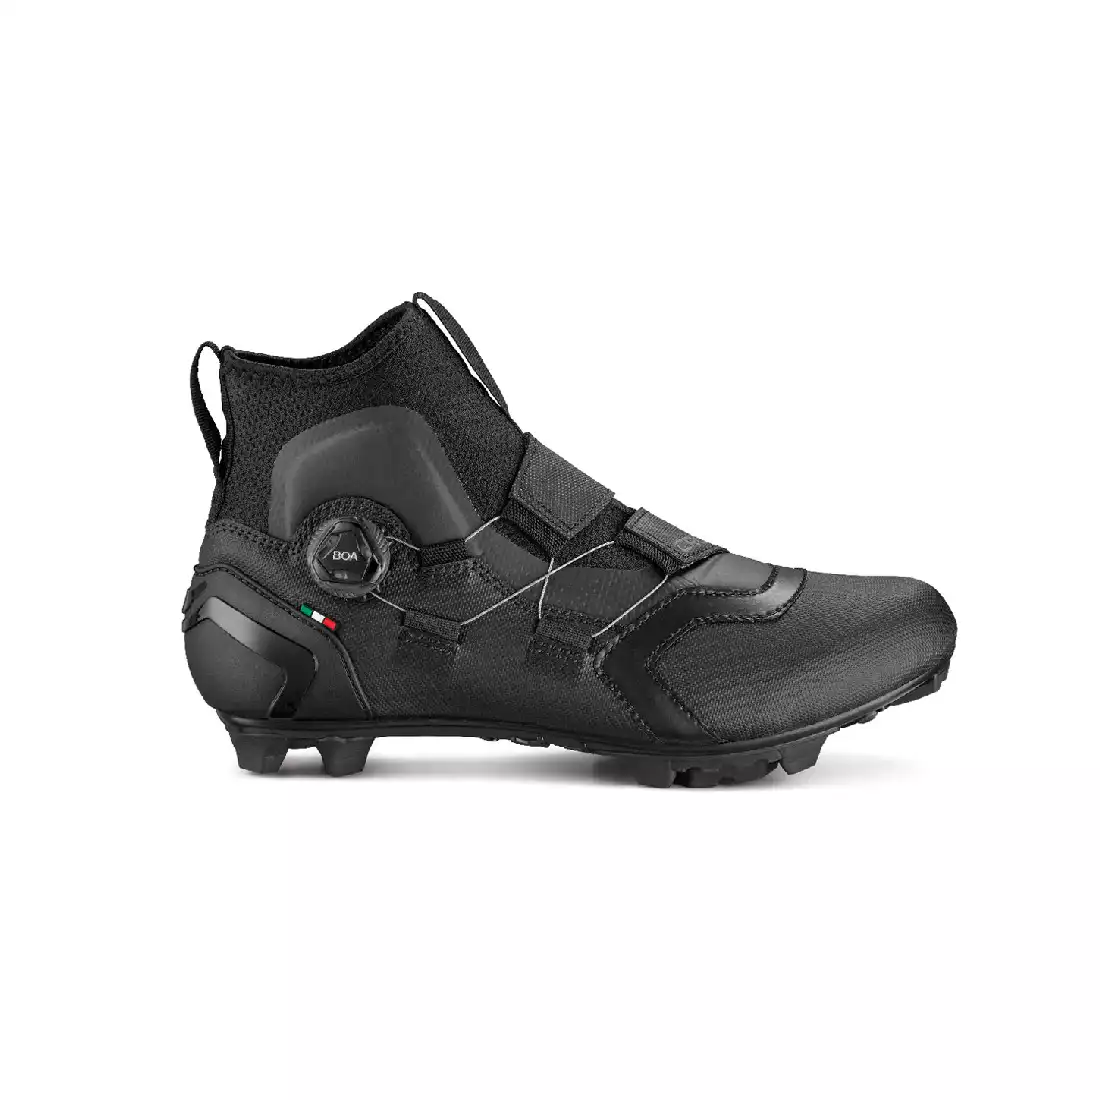 CRONO CW-1-21 Téli kerékpáros cipő MTB, nylon, fekete